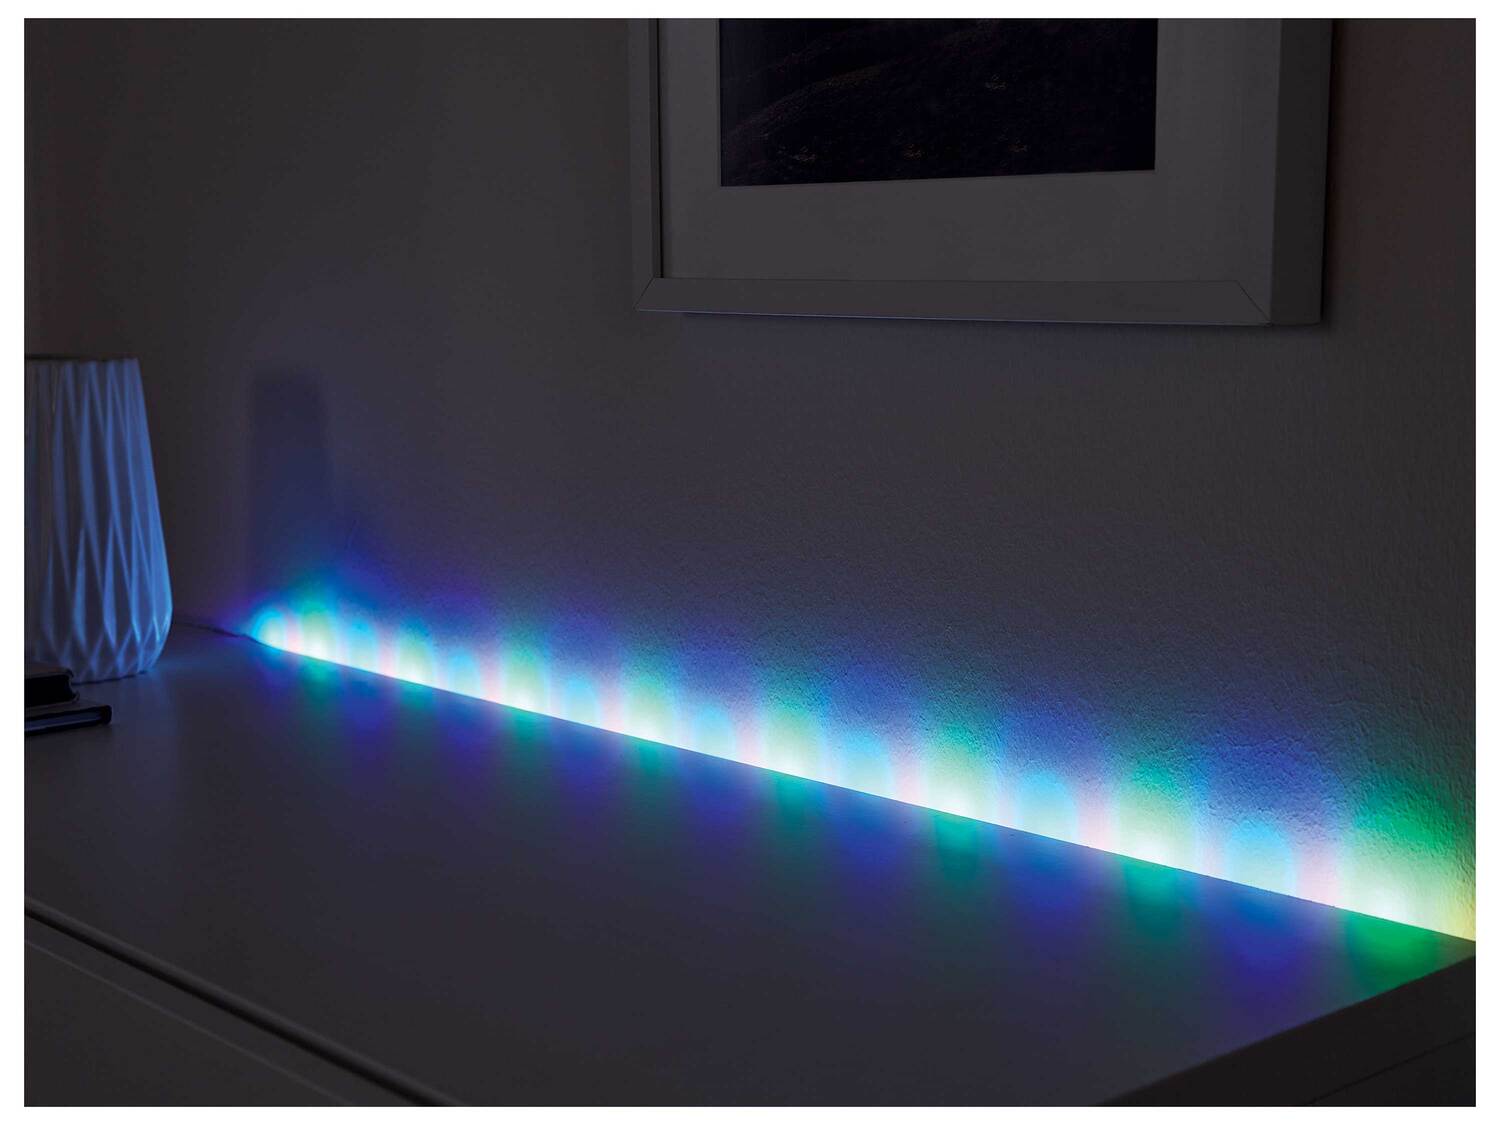 Ruban LED , le prix 6.99 € 
- Au choix :
- 32 LED basse consommation de couleur ...